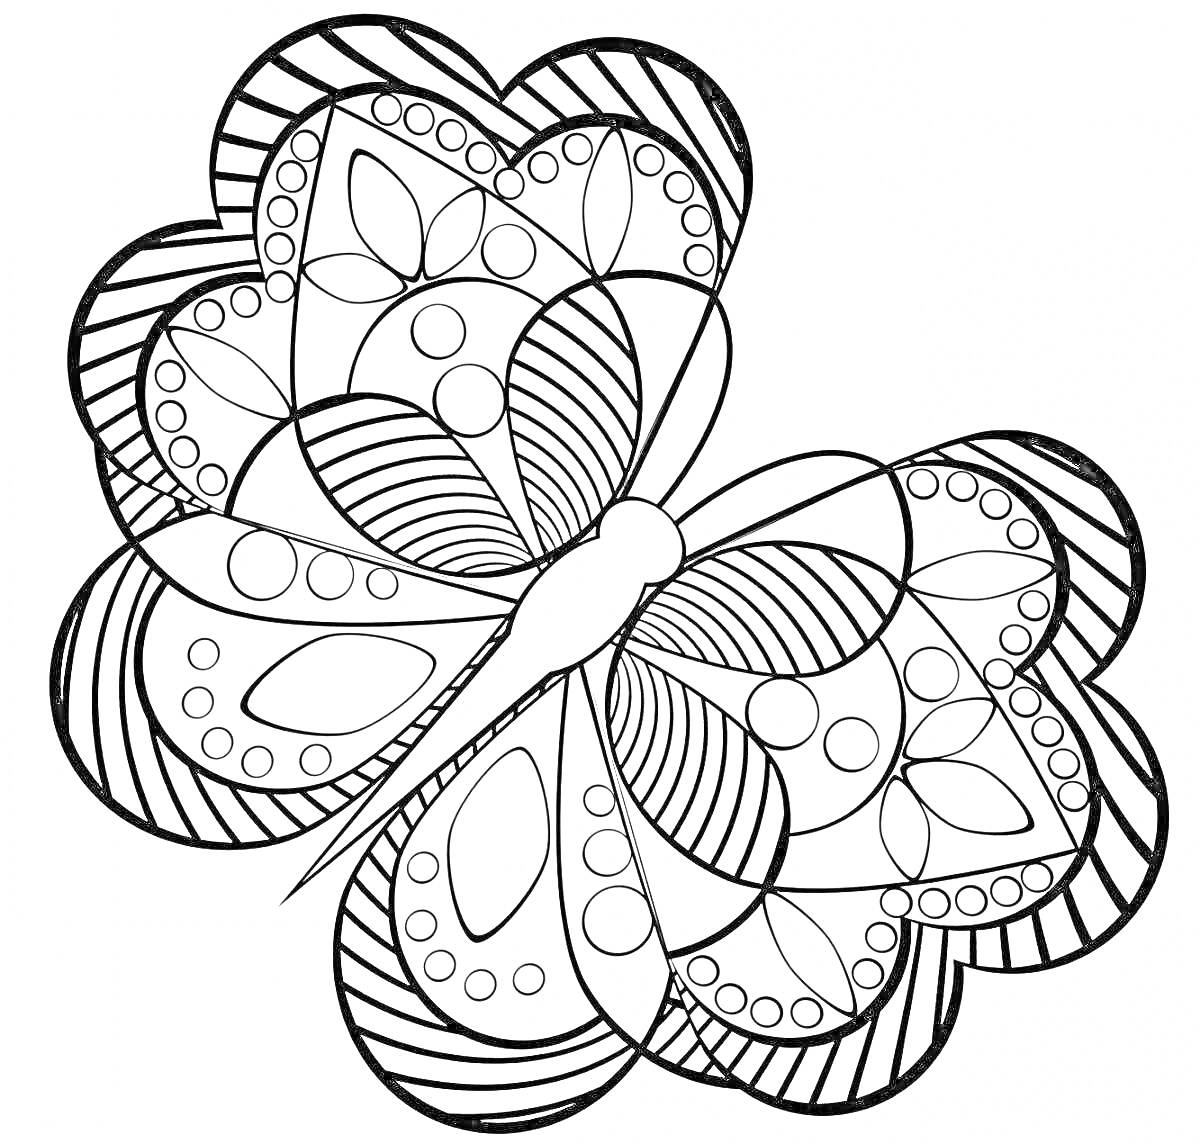 Раскраска Бабочка с узорами и элементами природы